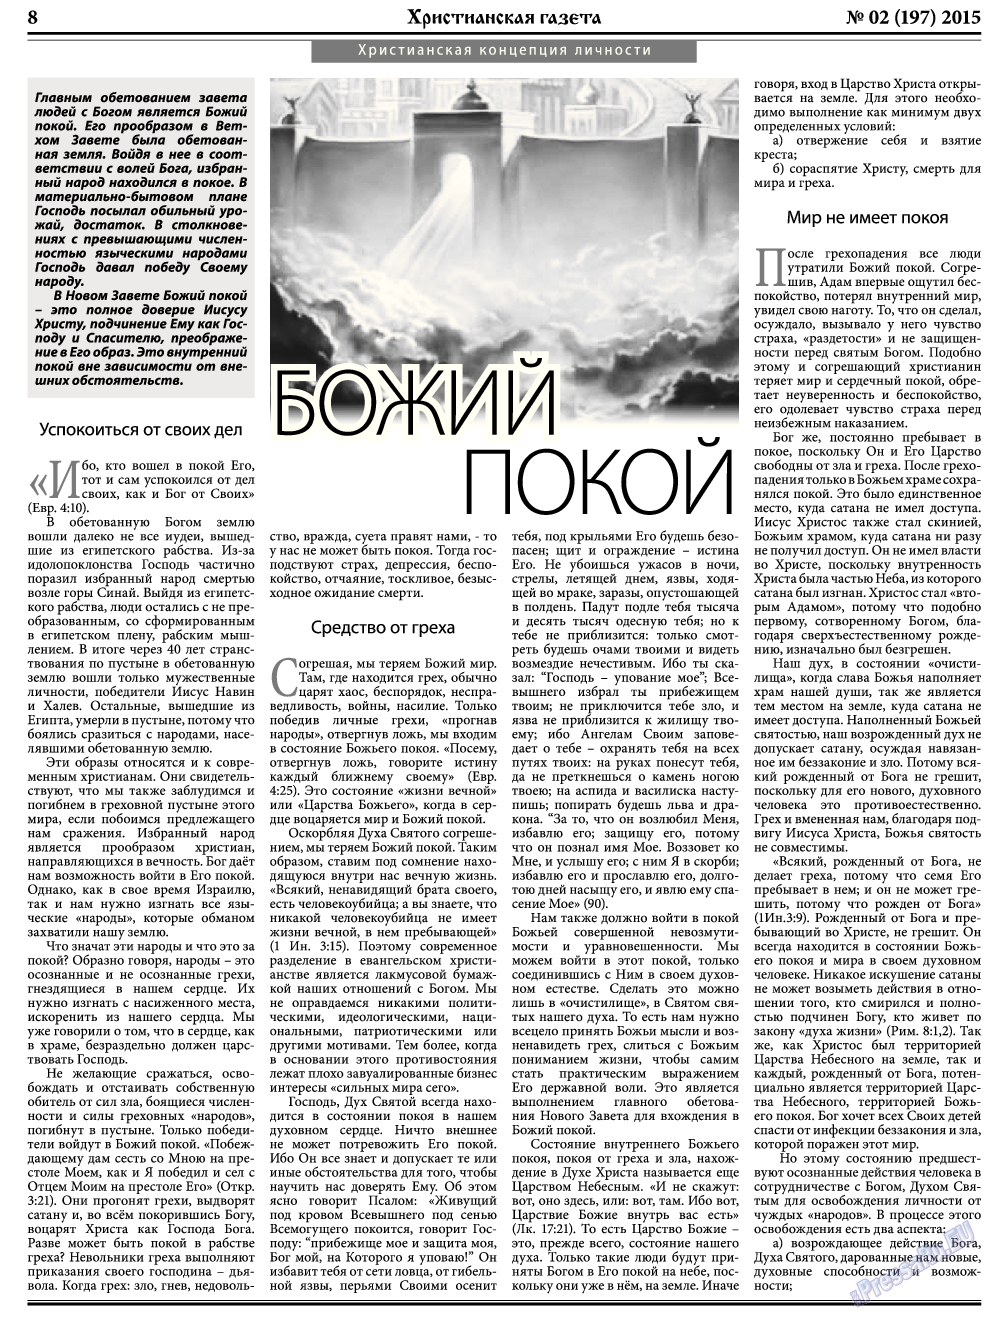 Христианская газета, газета. 2015 №2 стр.8